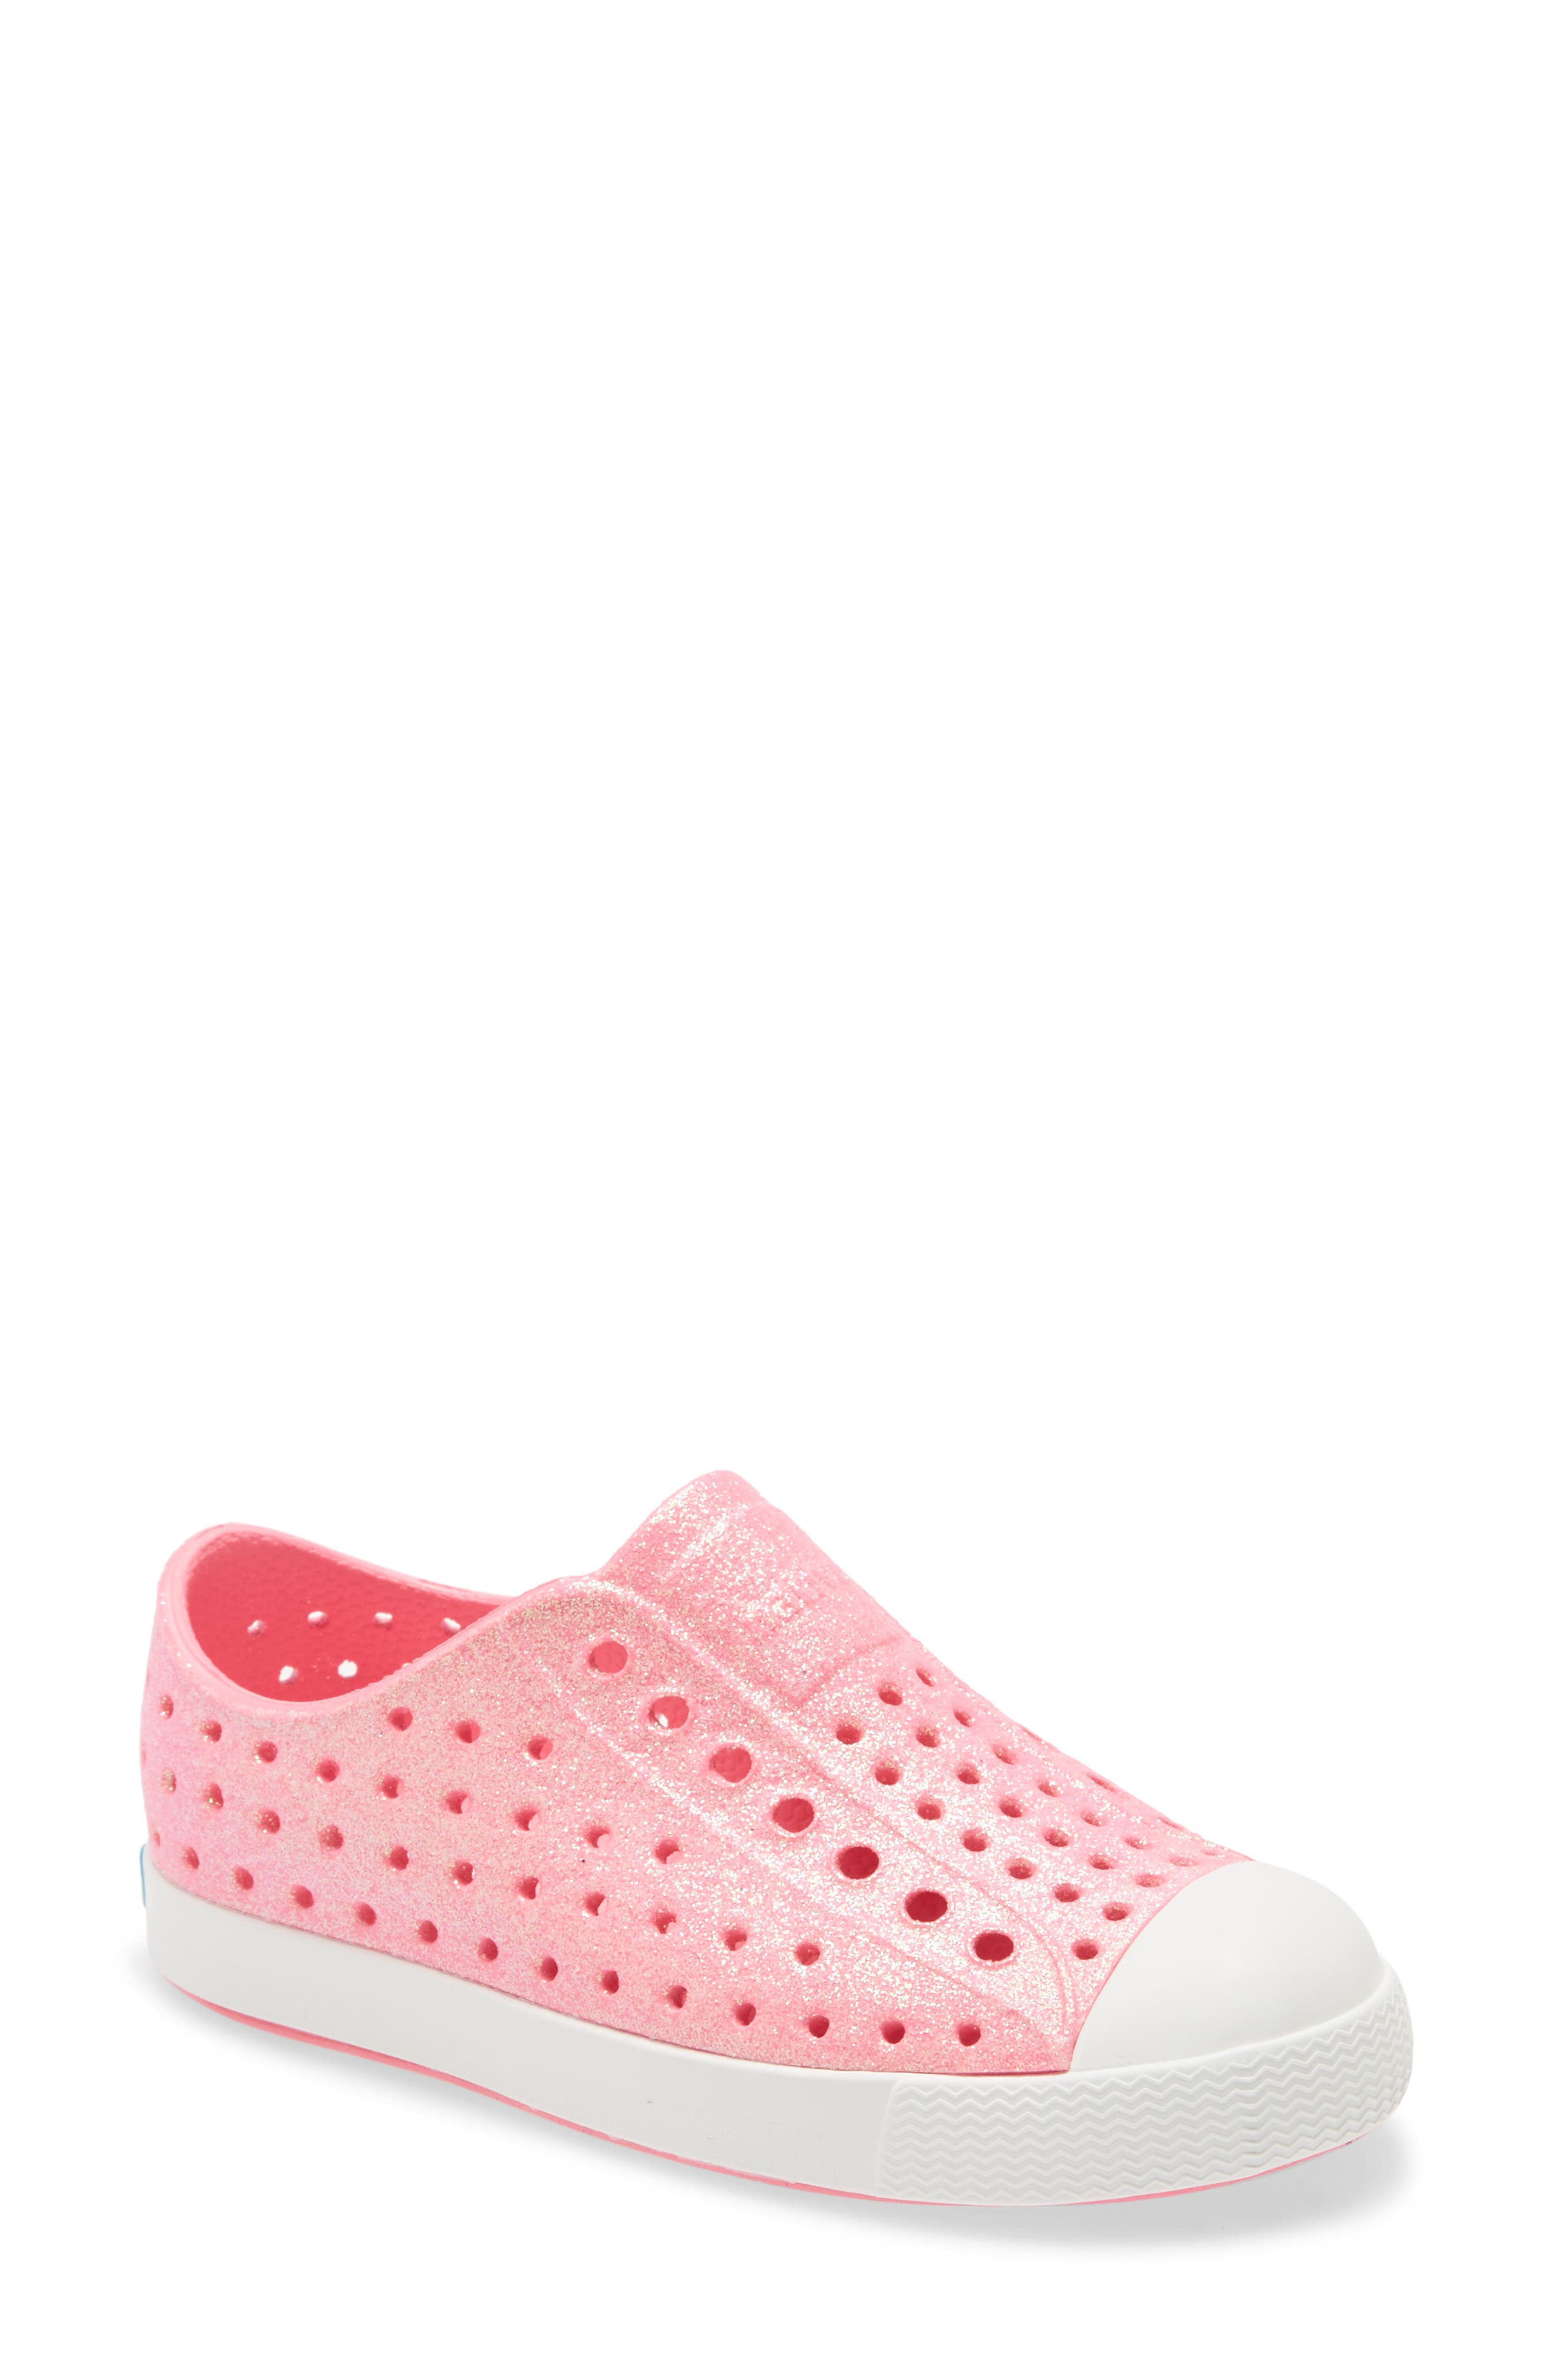 Toddler Girl's Native Shoes Jefferson Bling Glitter Slip-On Vegan Sneaker, Size 9 M - Pink